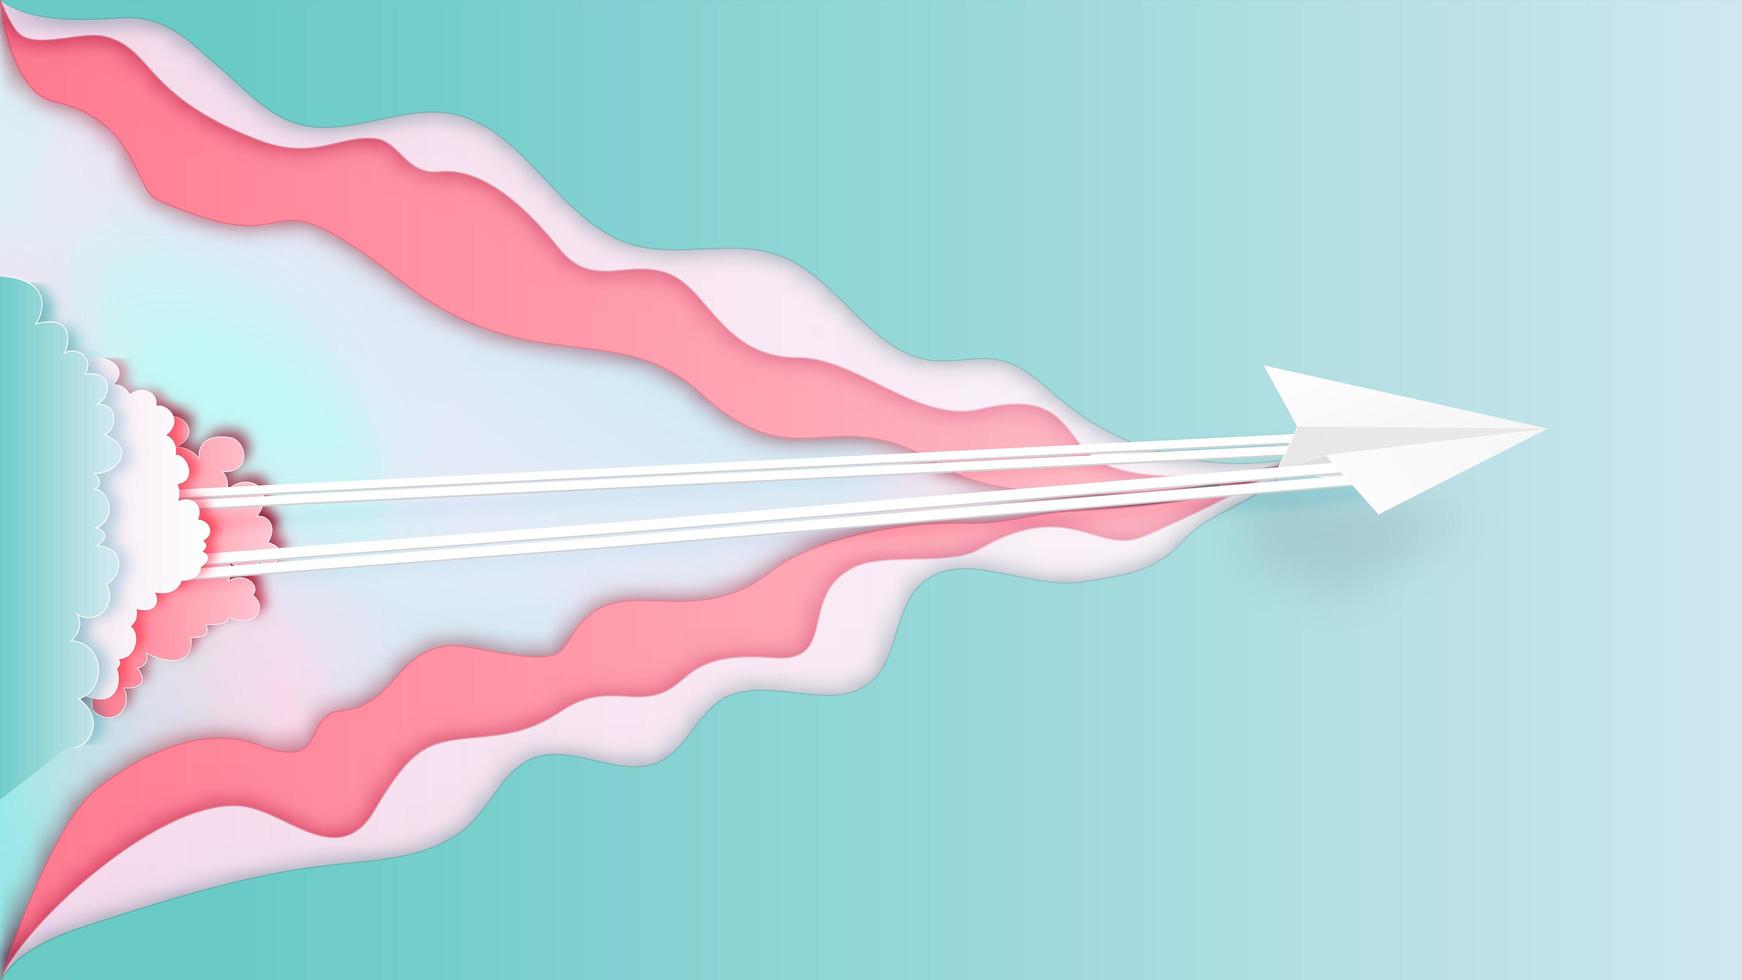 Papierflugzeug, das von den Wolken im Papierschnittstil fliegt vektor